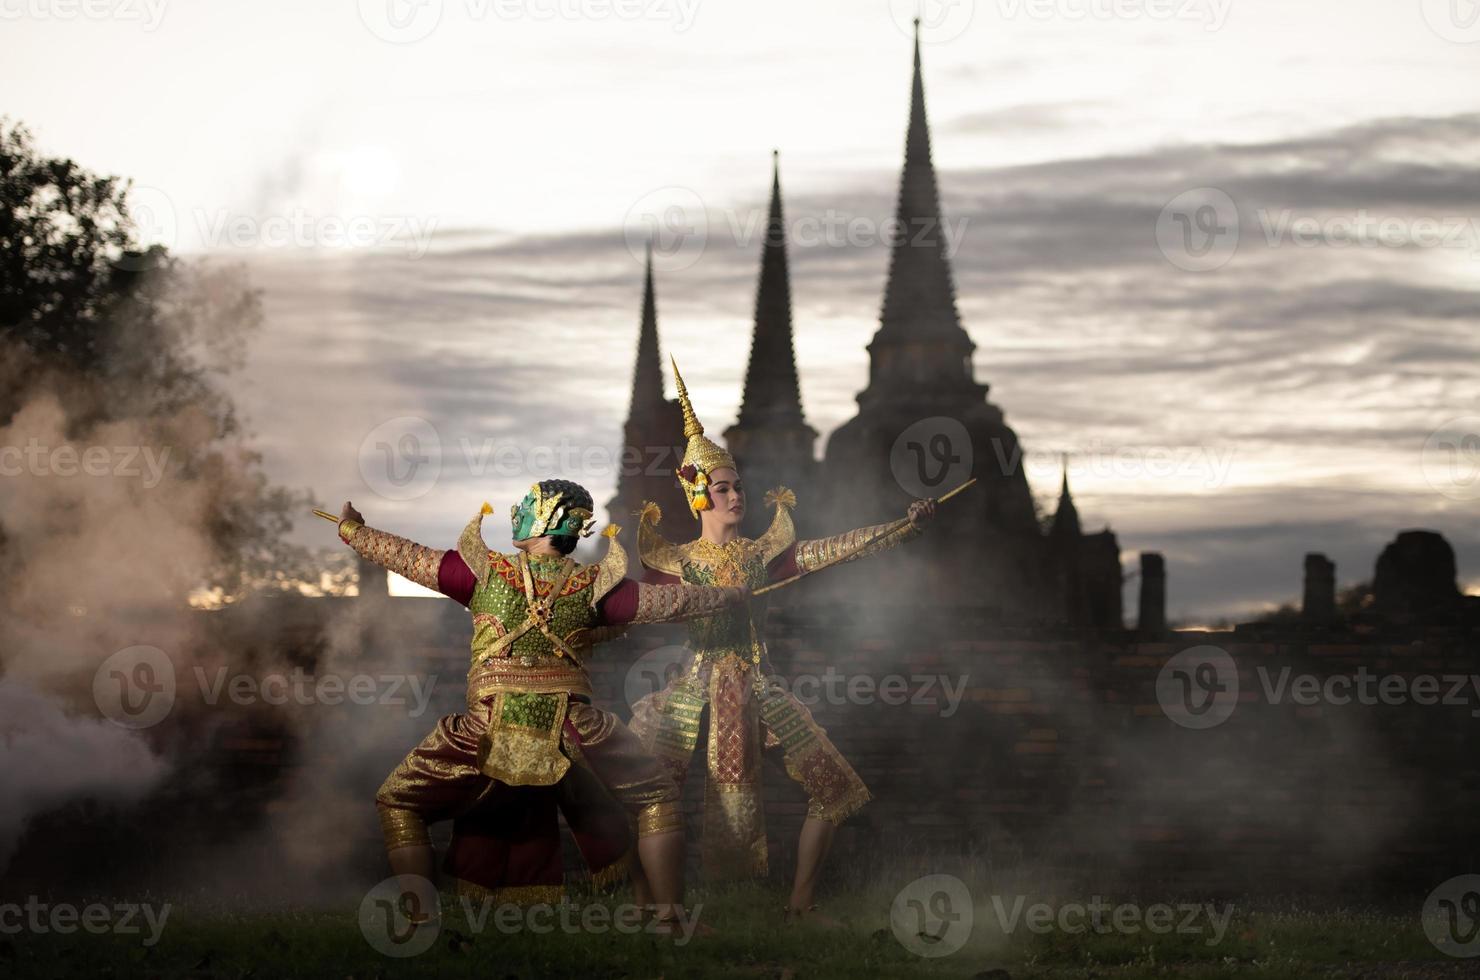 khon, är en klassisk thailändsk dans i mask. i ramayanalitteraturen är detta kampen mellan rama och jätte. foto